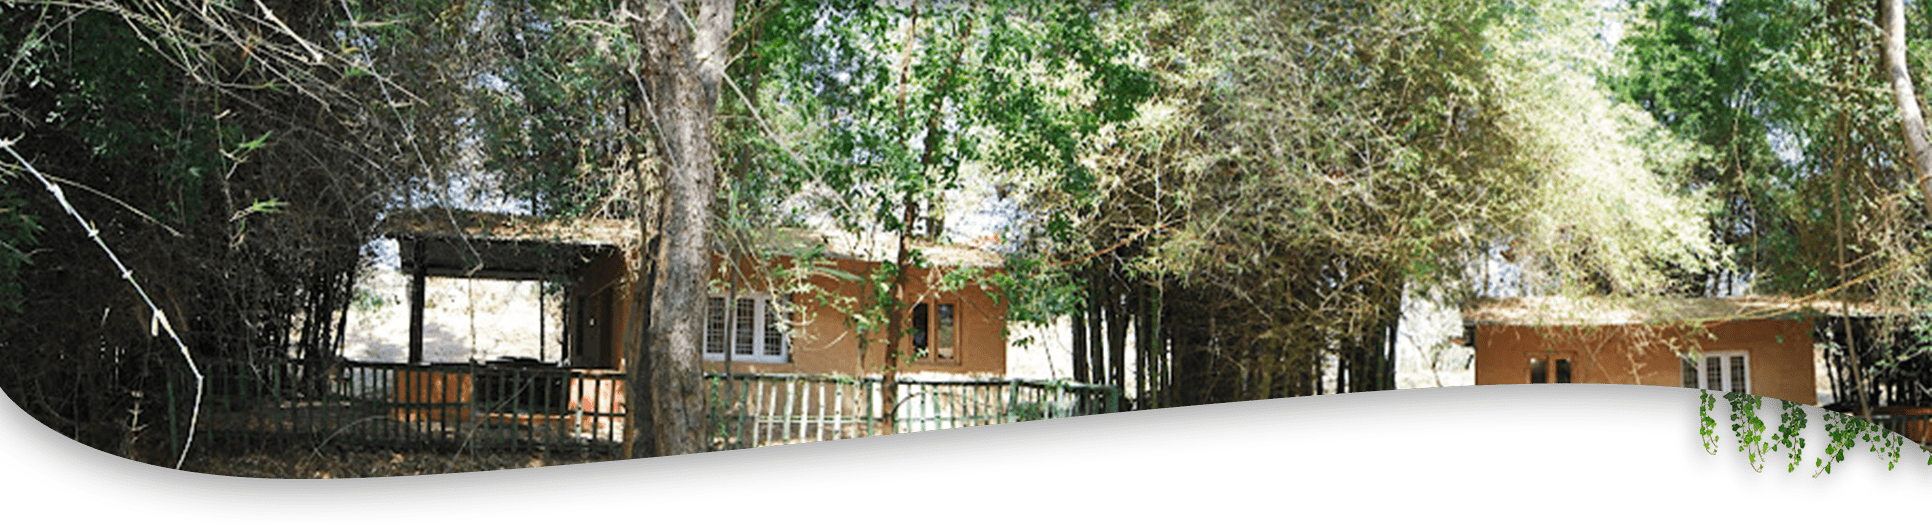 River Valley resort cottage Image in Banner